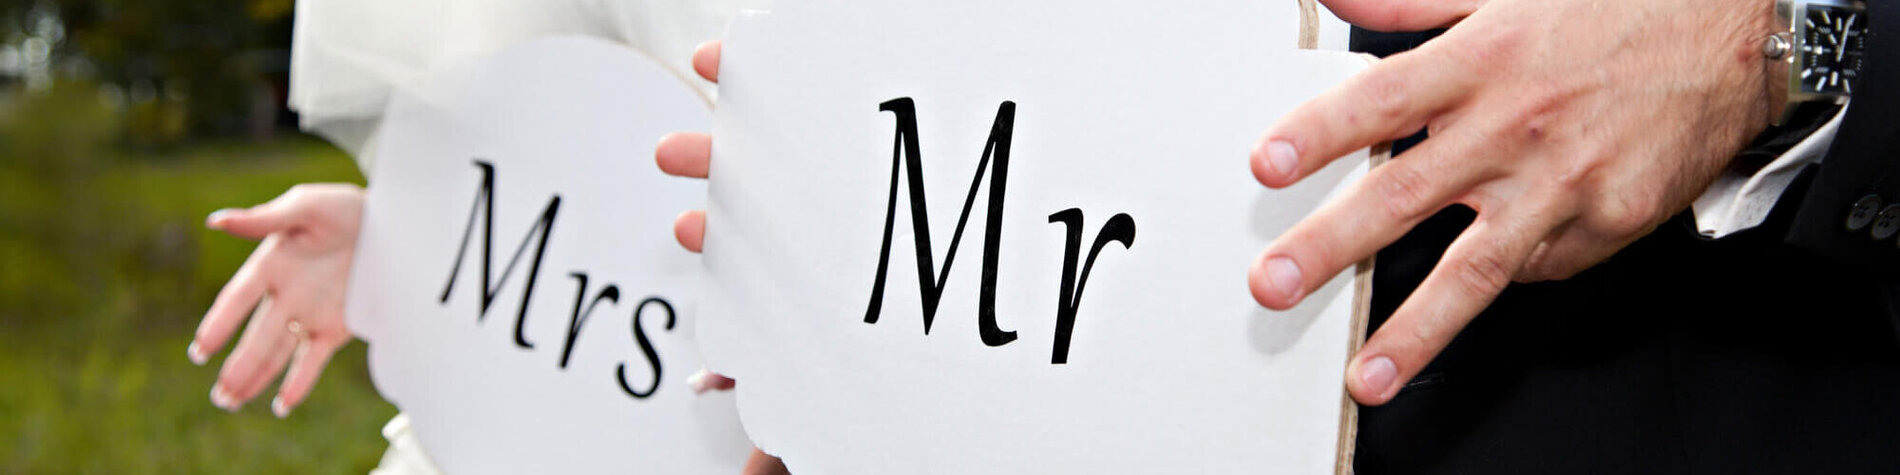 Brautpaar mit Schild mit der Aufschrift MR und MRS